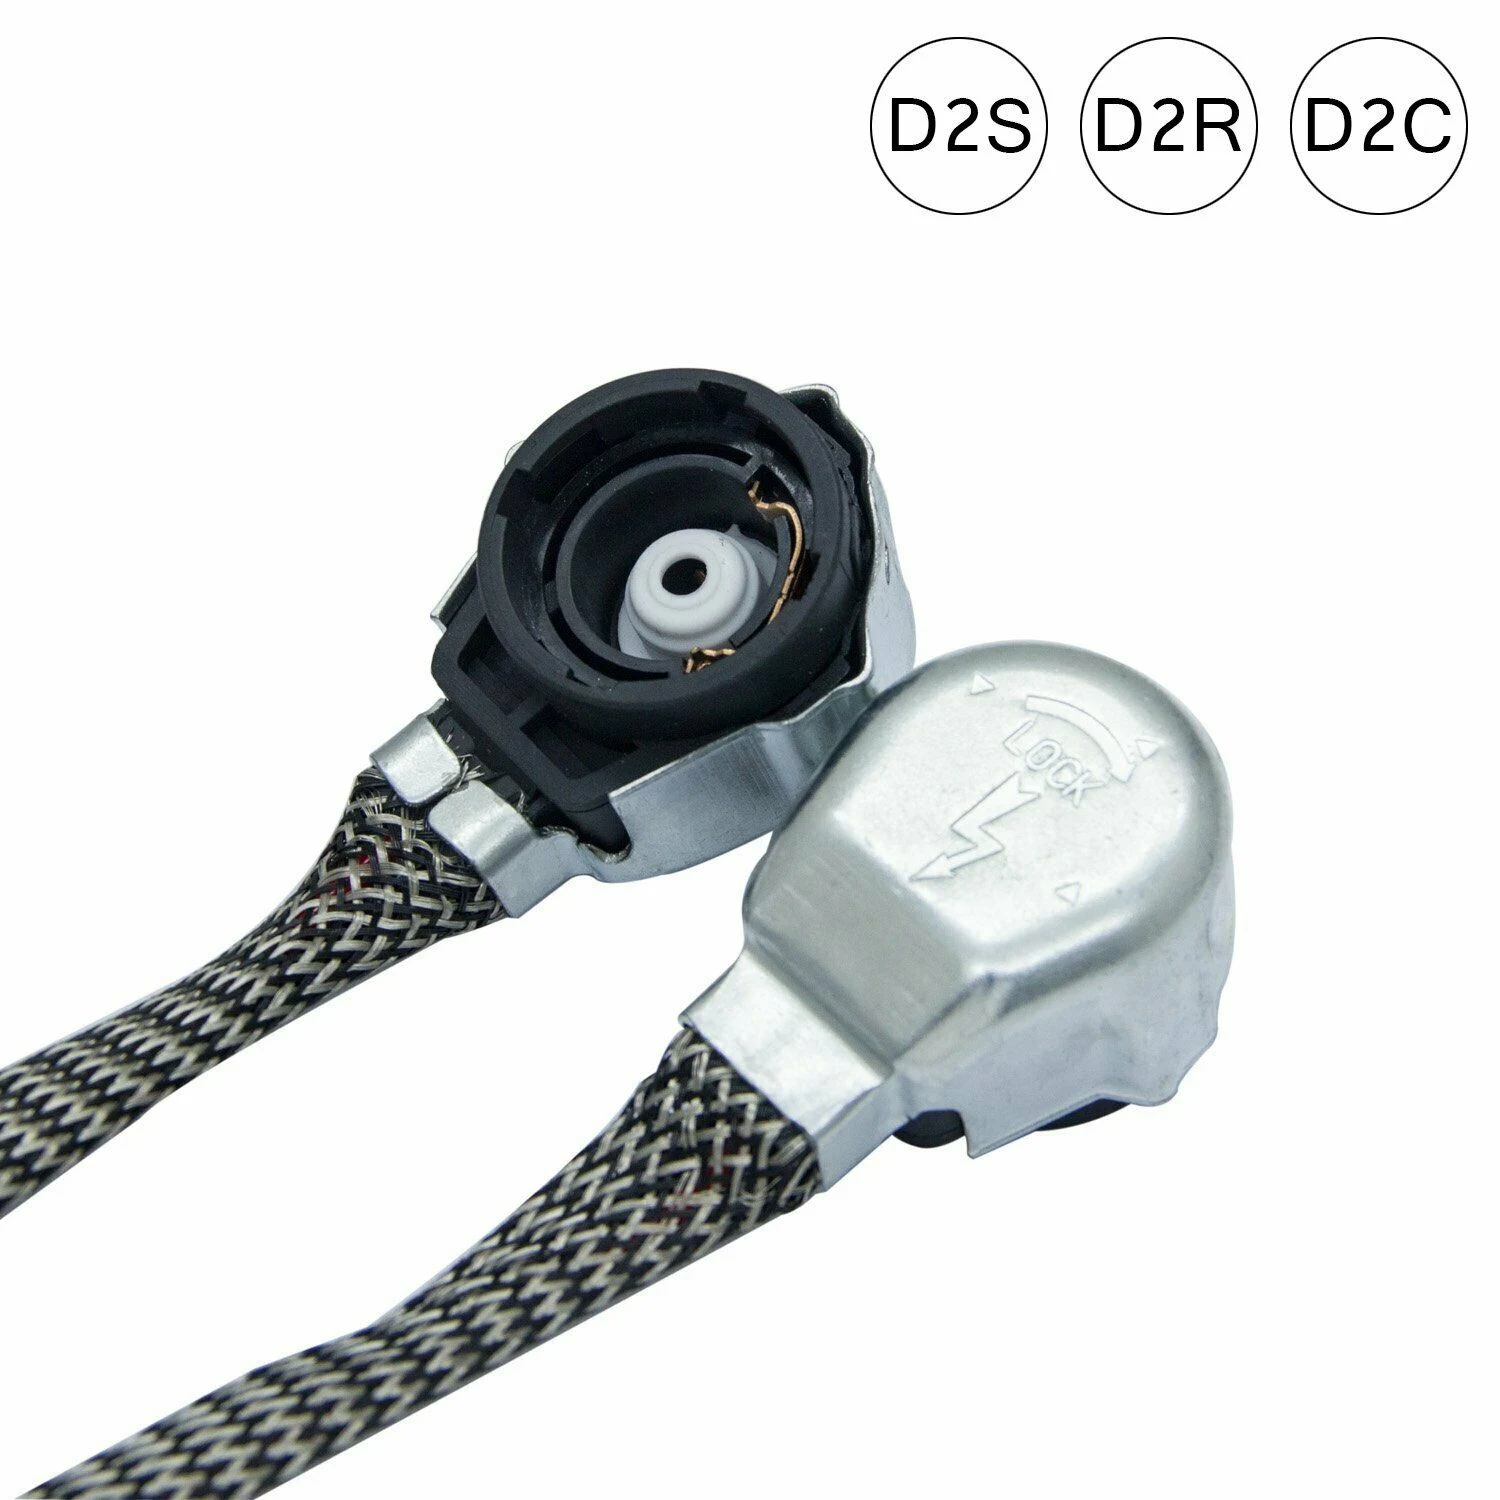 

2X D2S/D4S HID ксеноновые лампы адаптеры провода жгут соединения кабеля Разъем